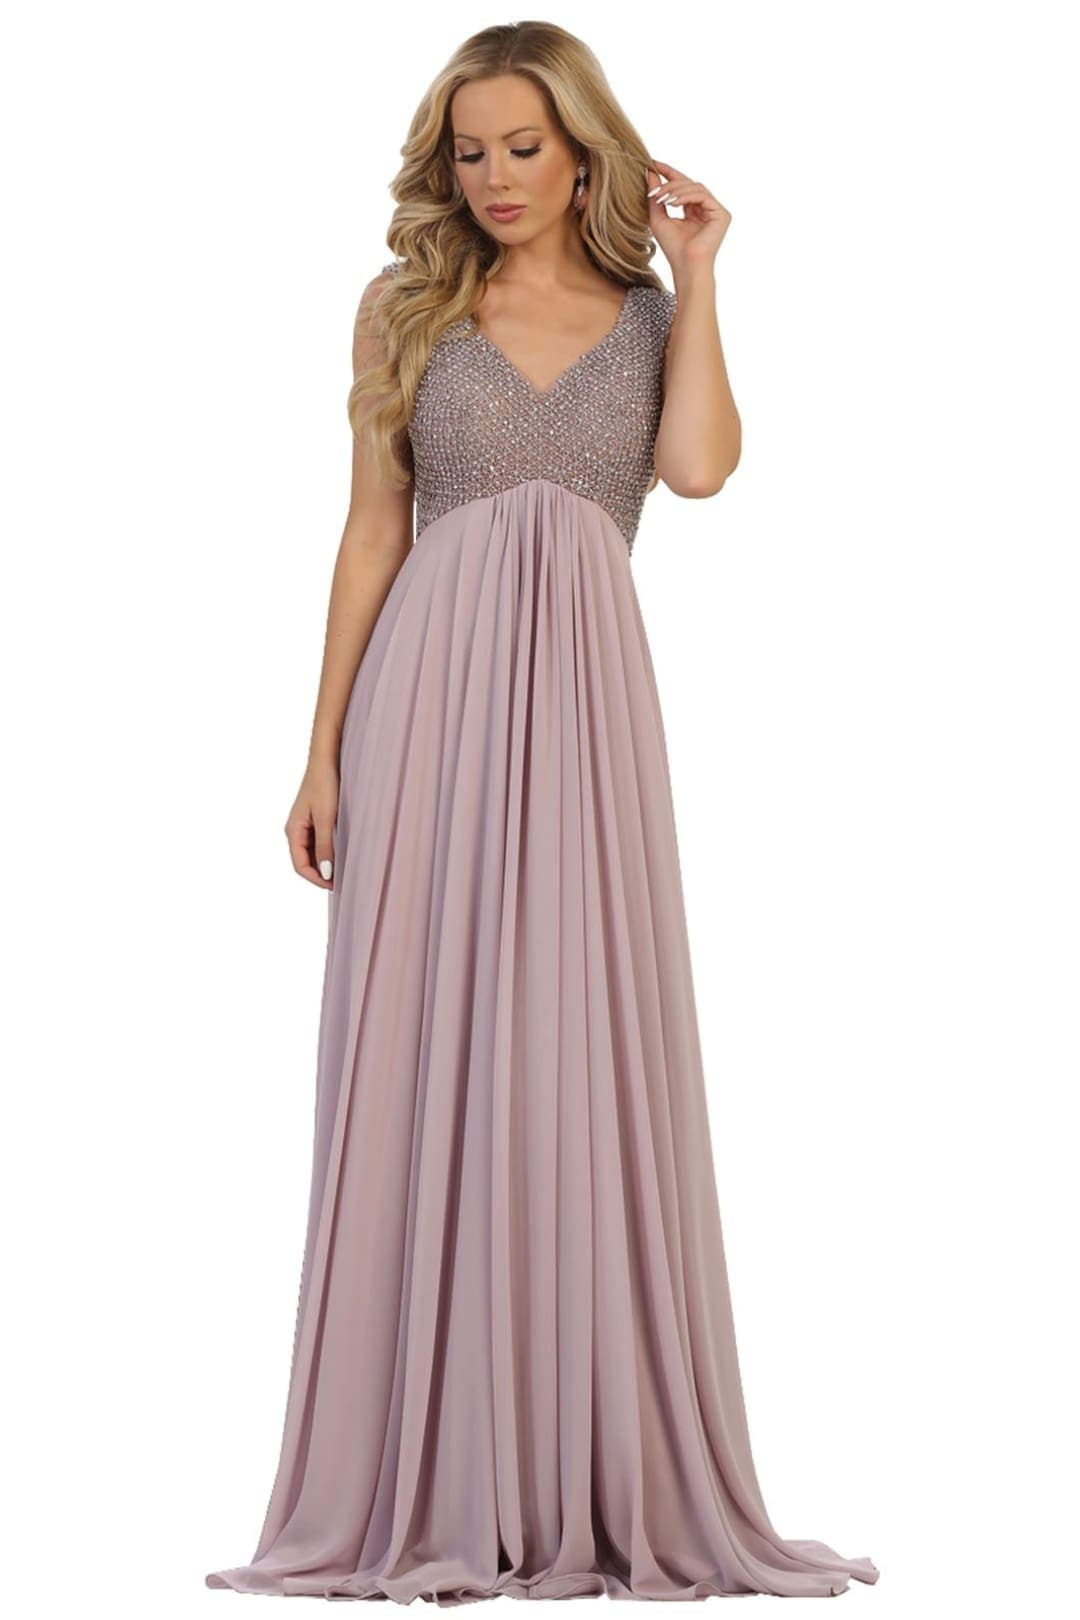 Jewel Adorned Prom Dress - Mauve / 4